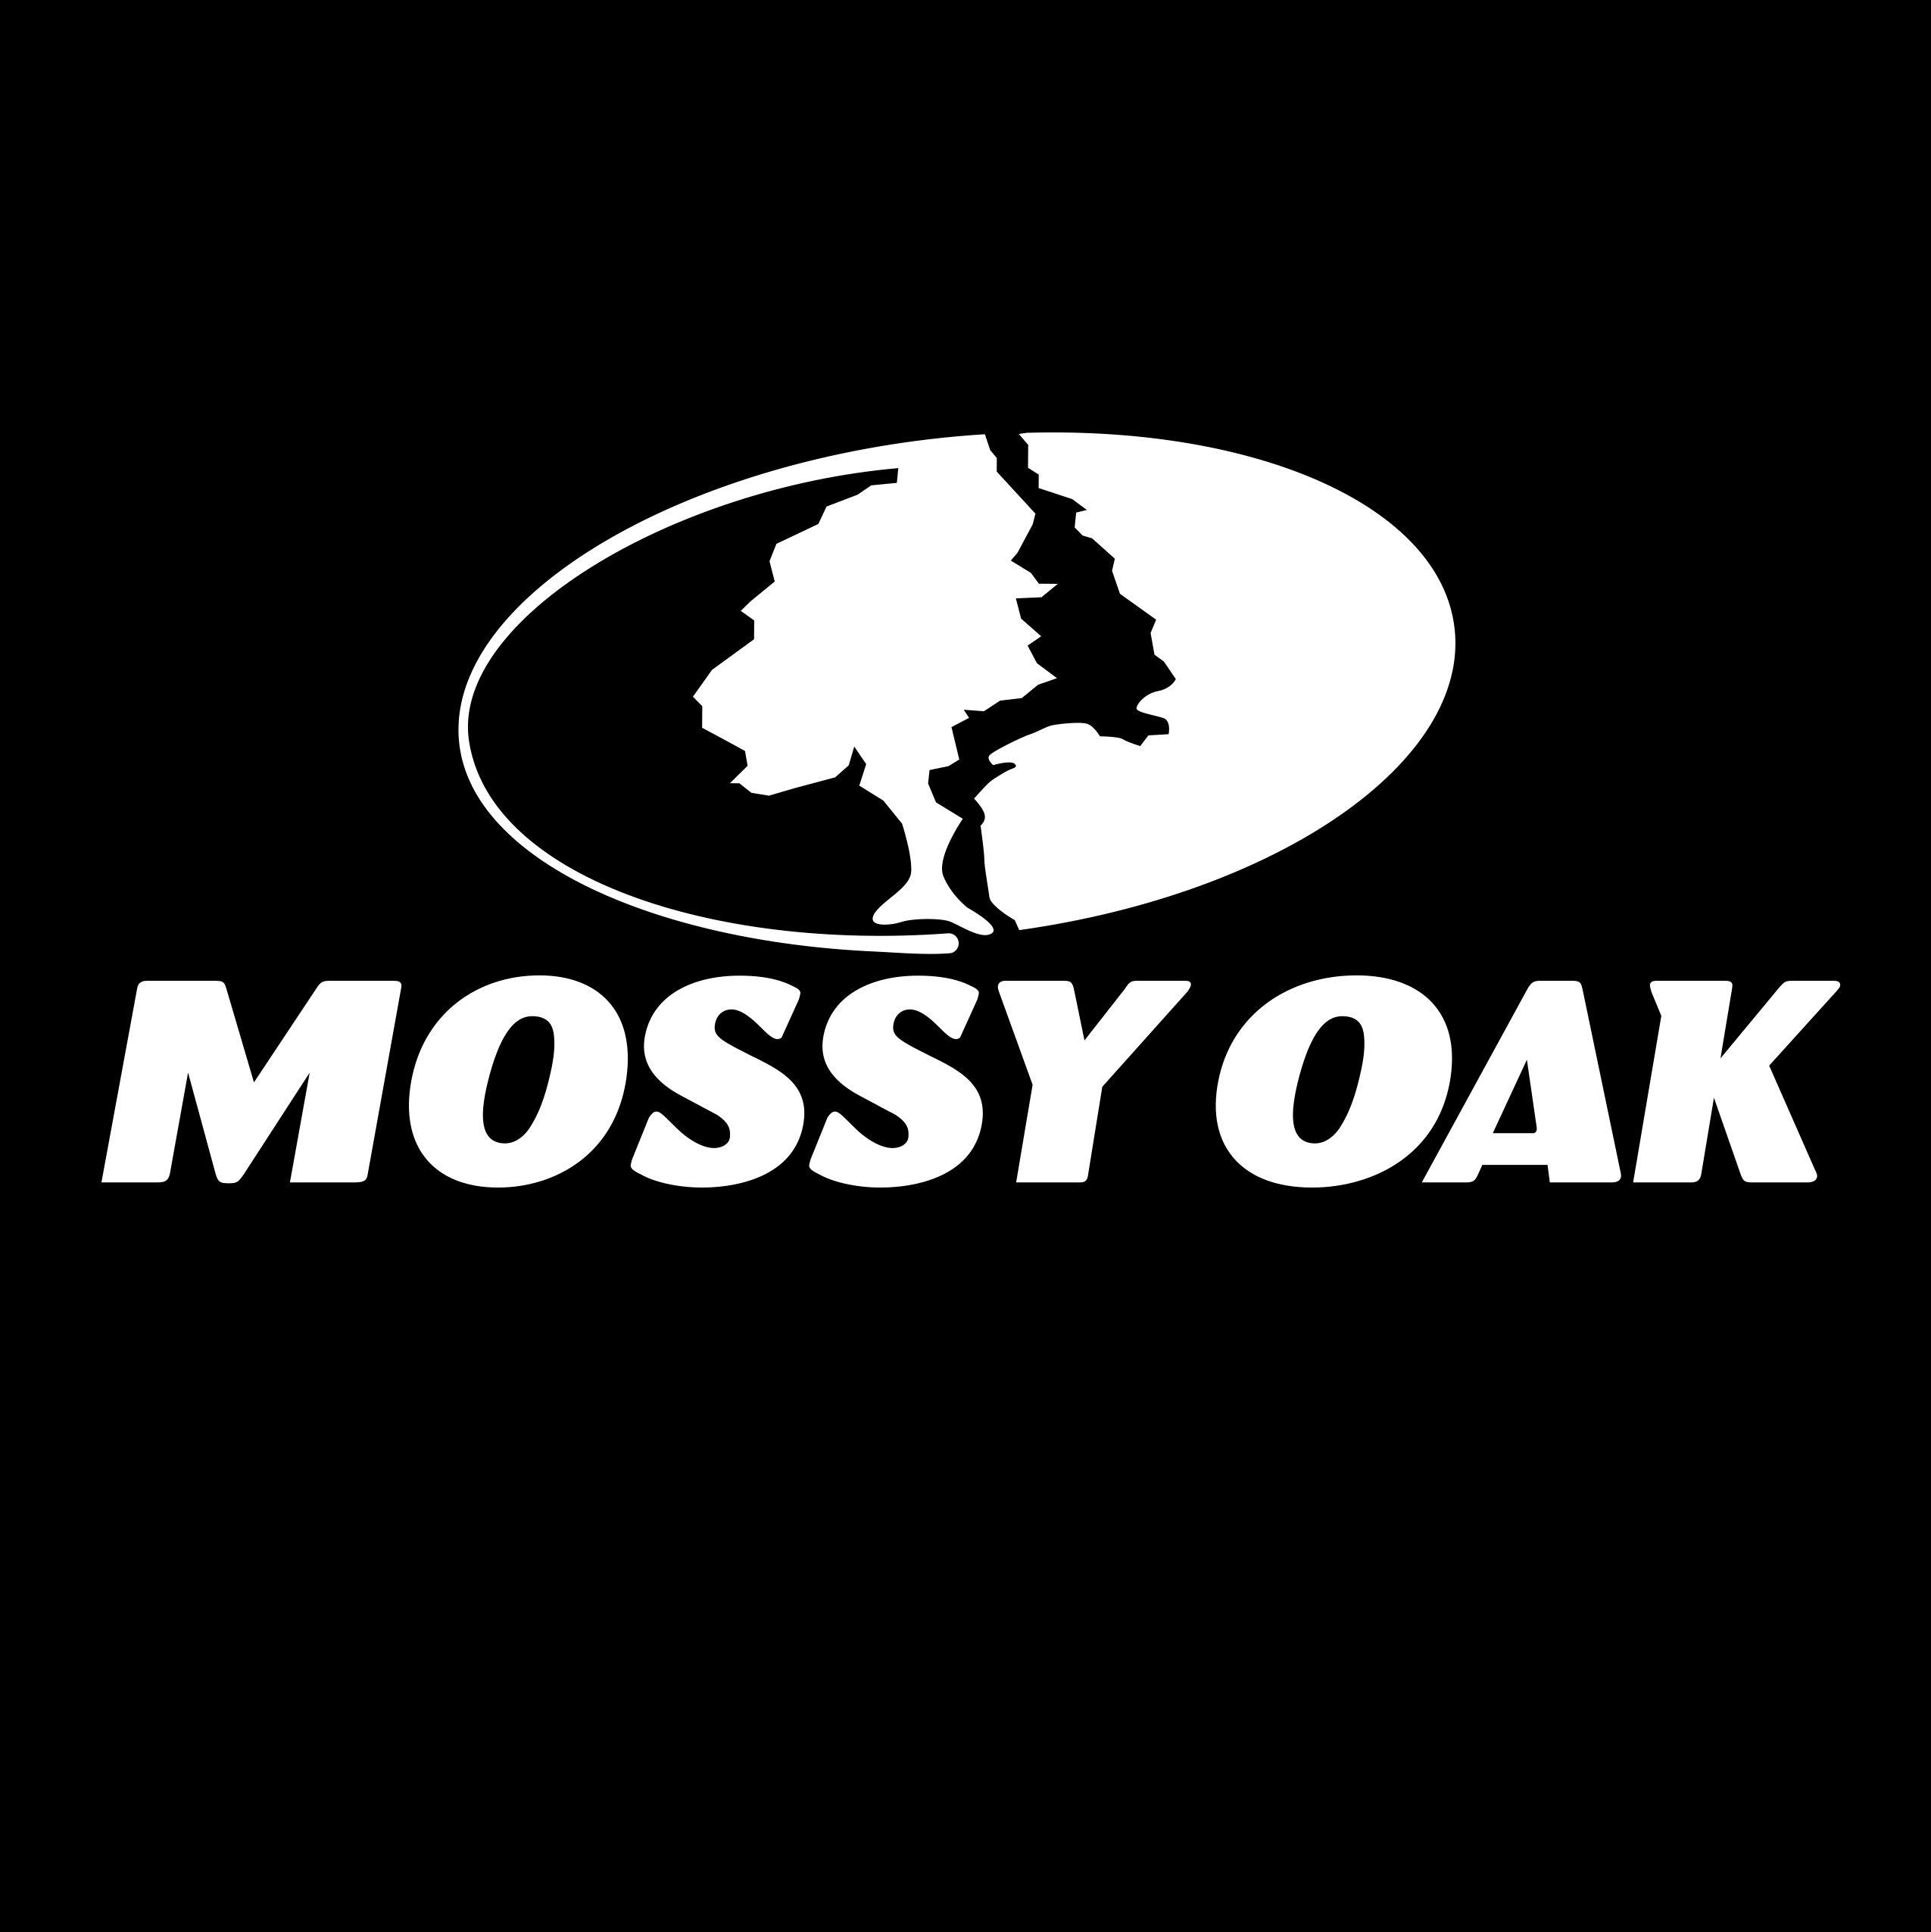 Mossy Oak Logo - Make a Mossy Oak Pumpkin